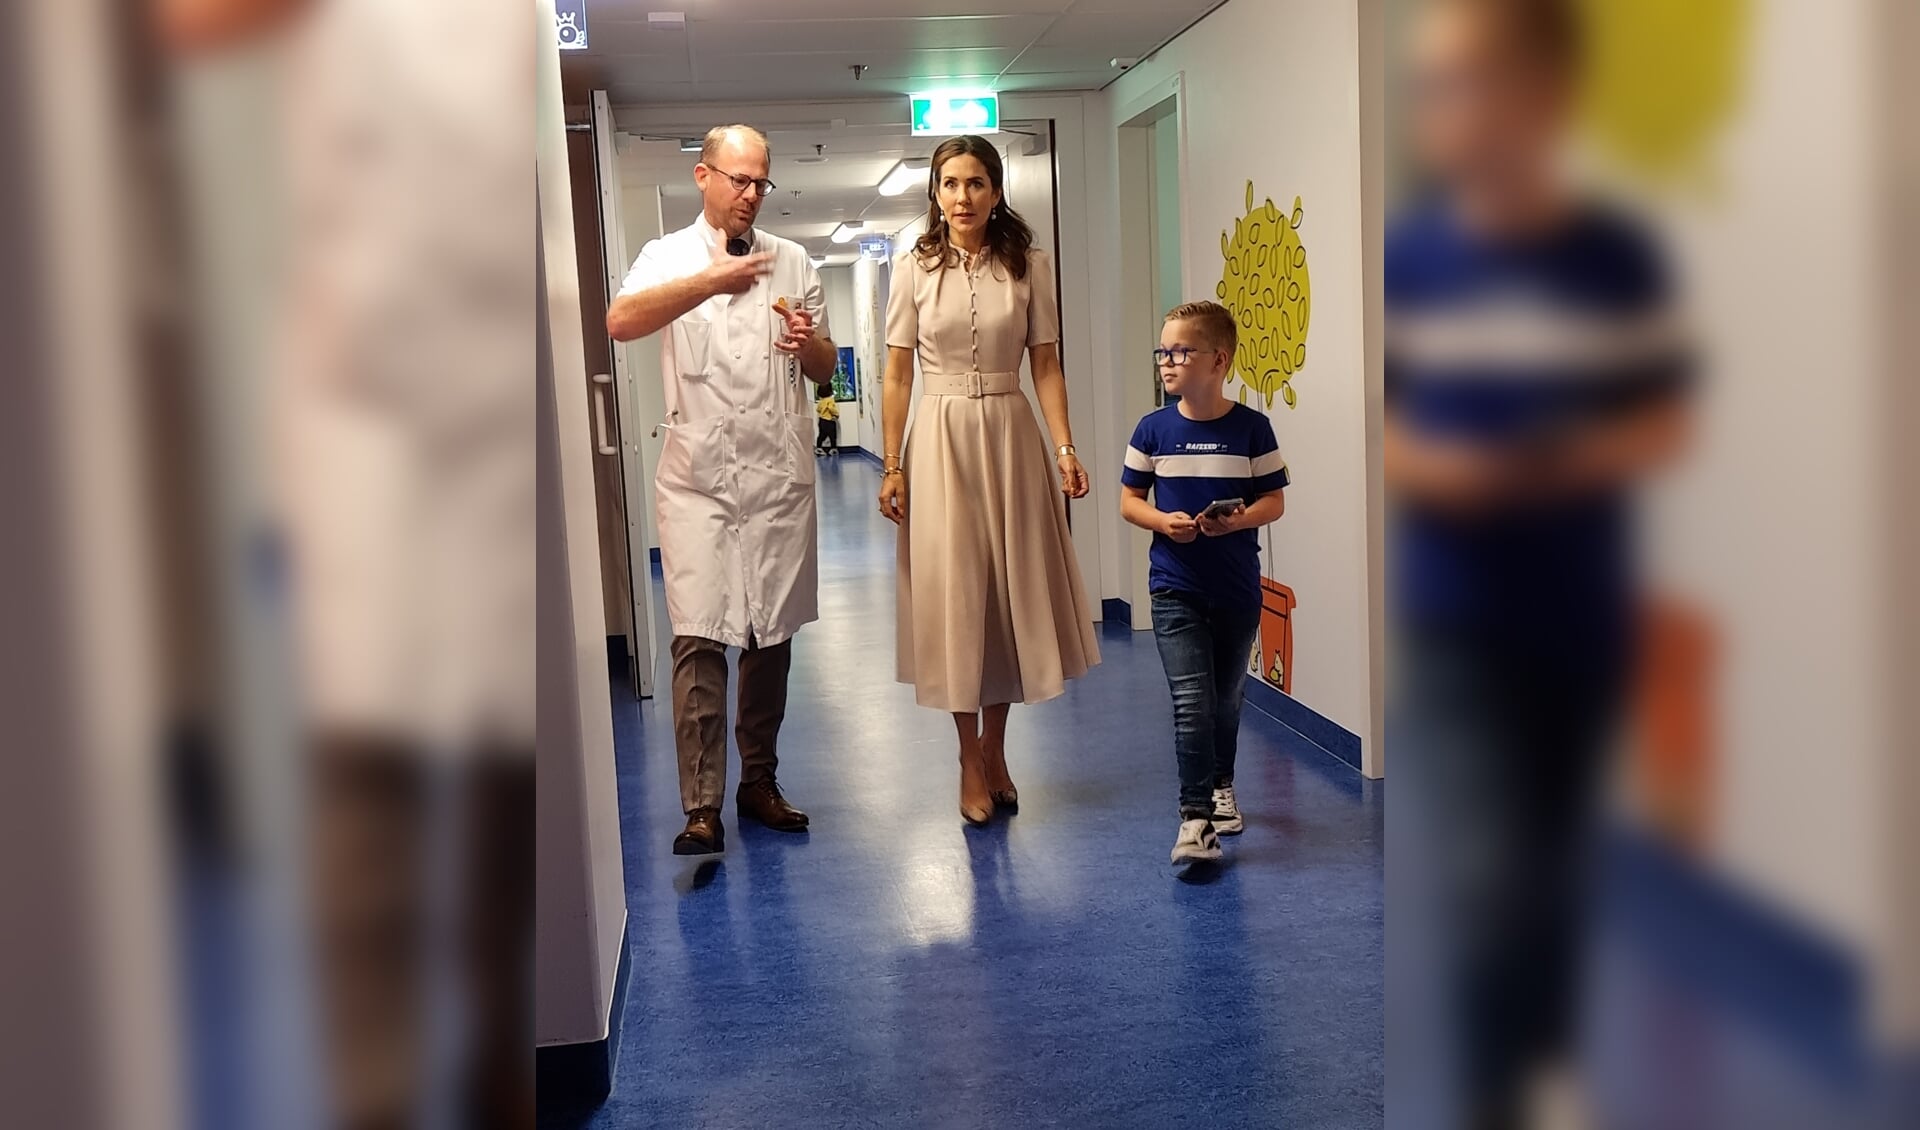 Stan van der Spek maakte een patiëntreis met de Deense kroonprinses Mary en een van de artsen. (foto: Sabina van der Spek)